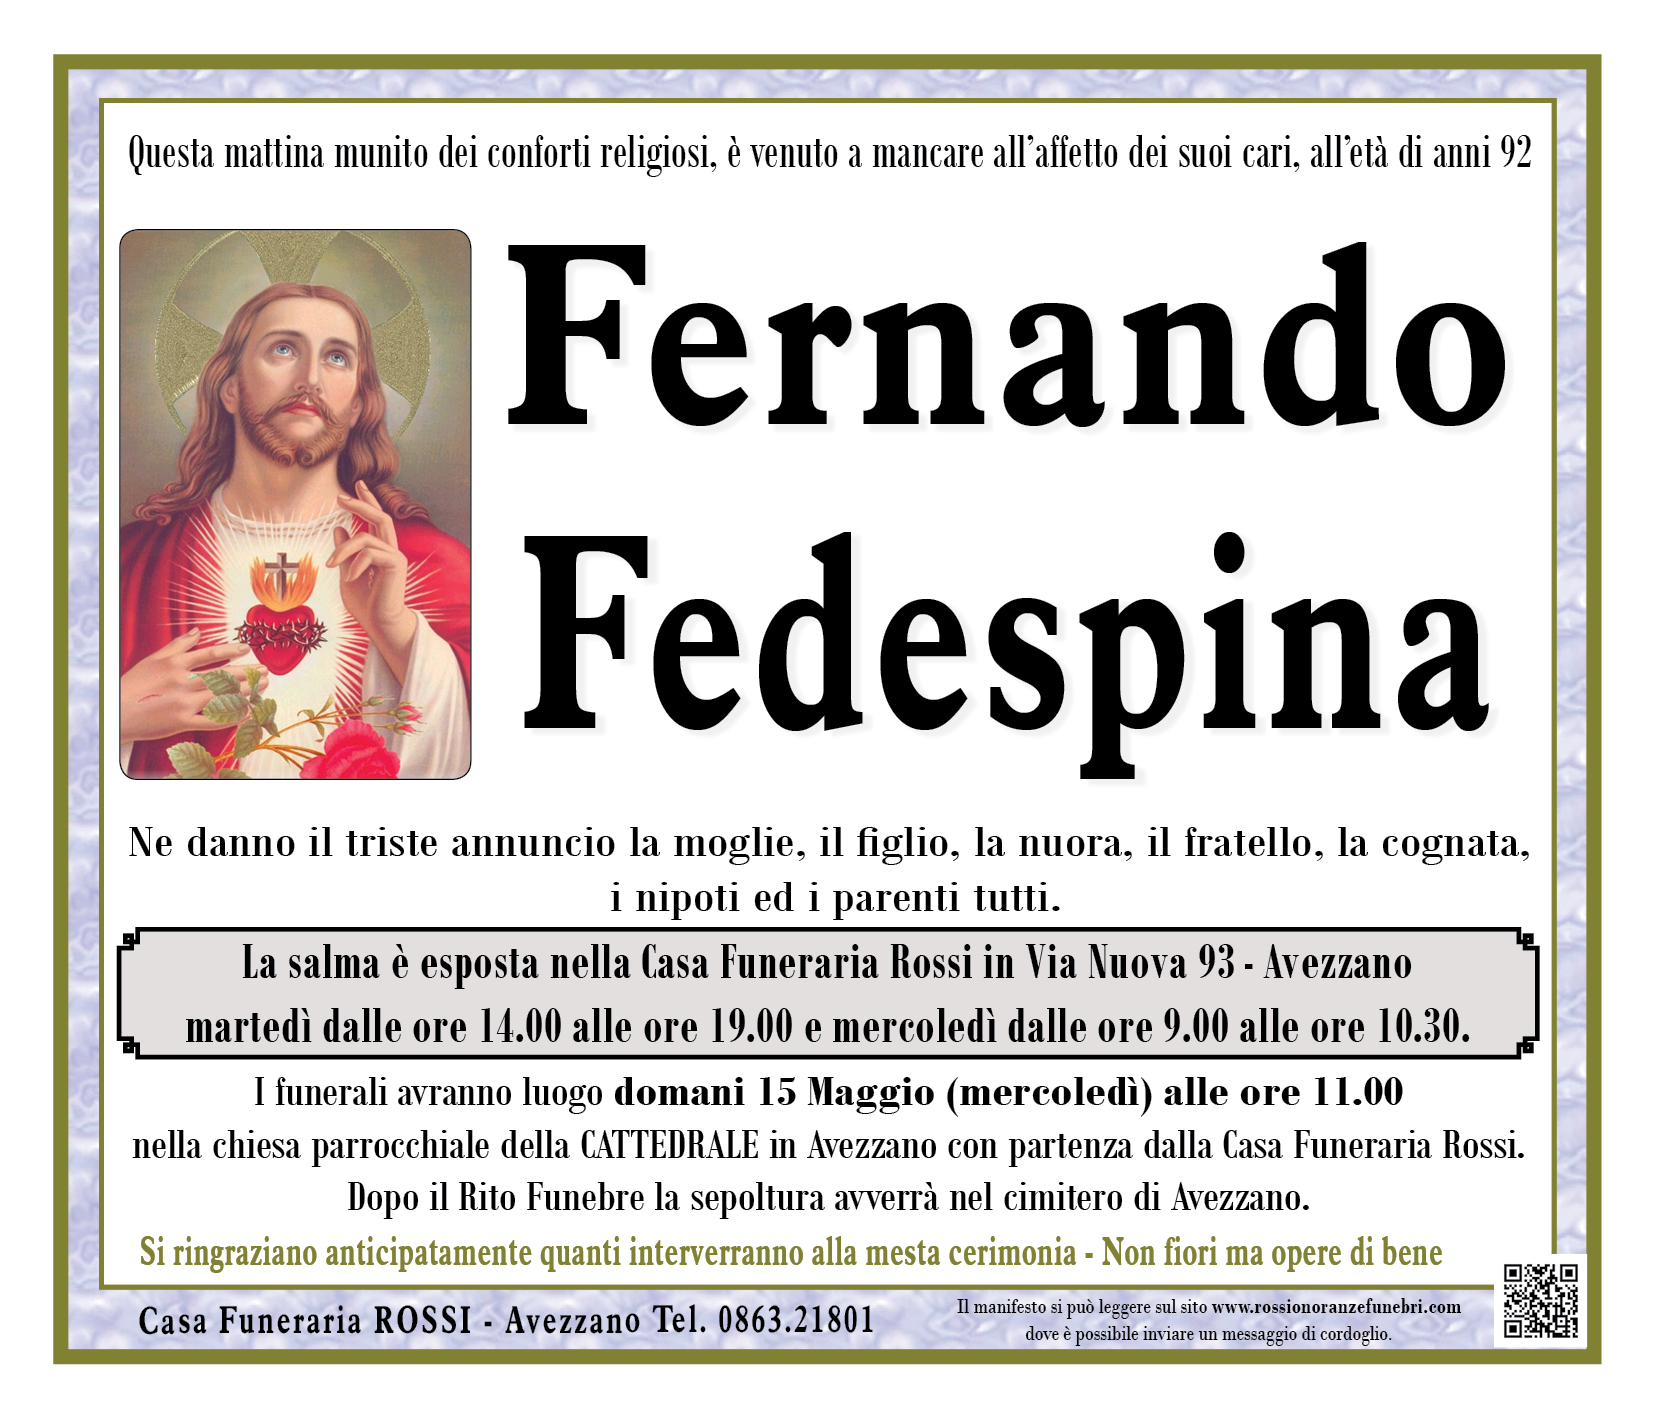 Fernando Fedespina